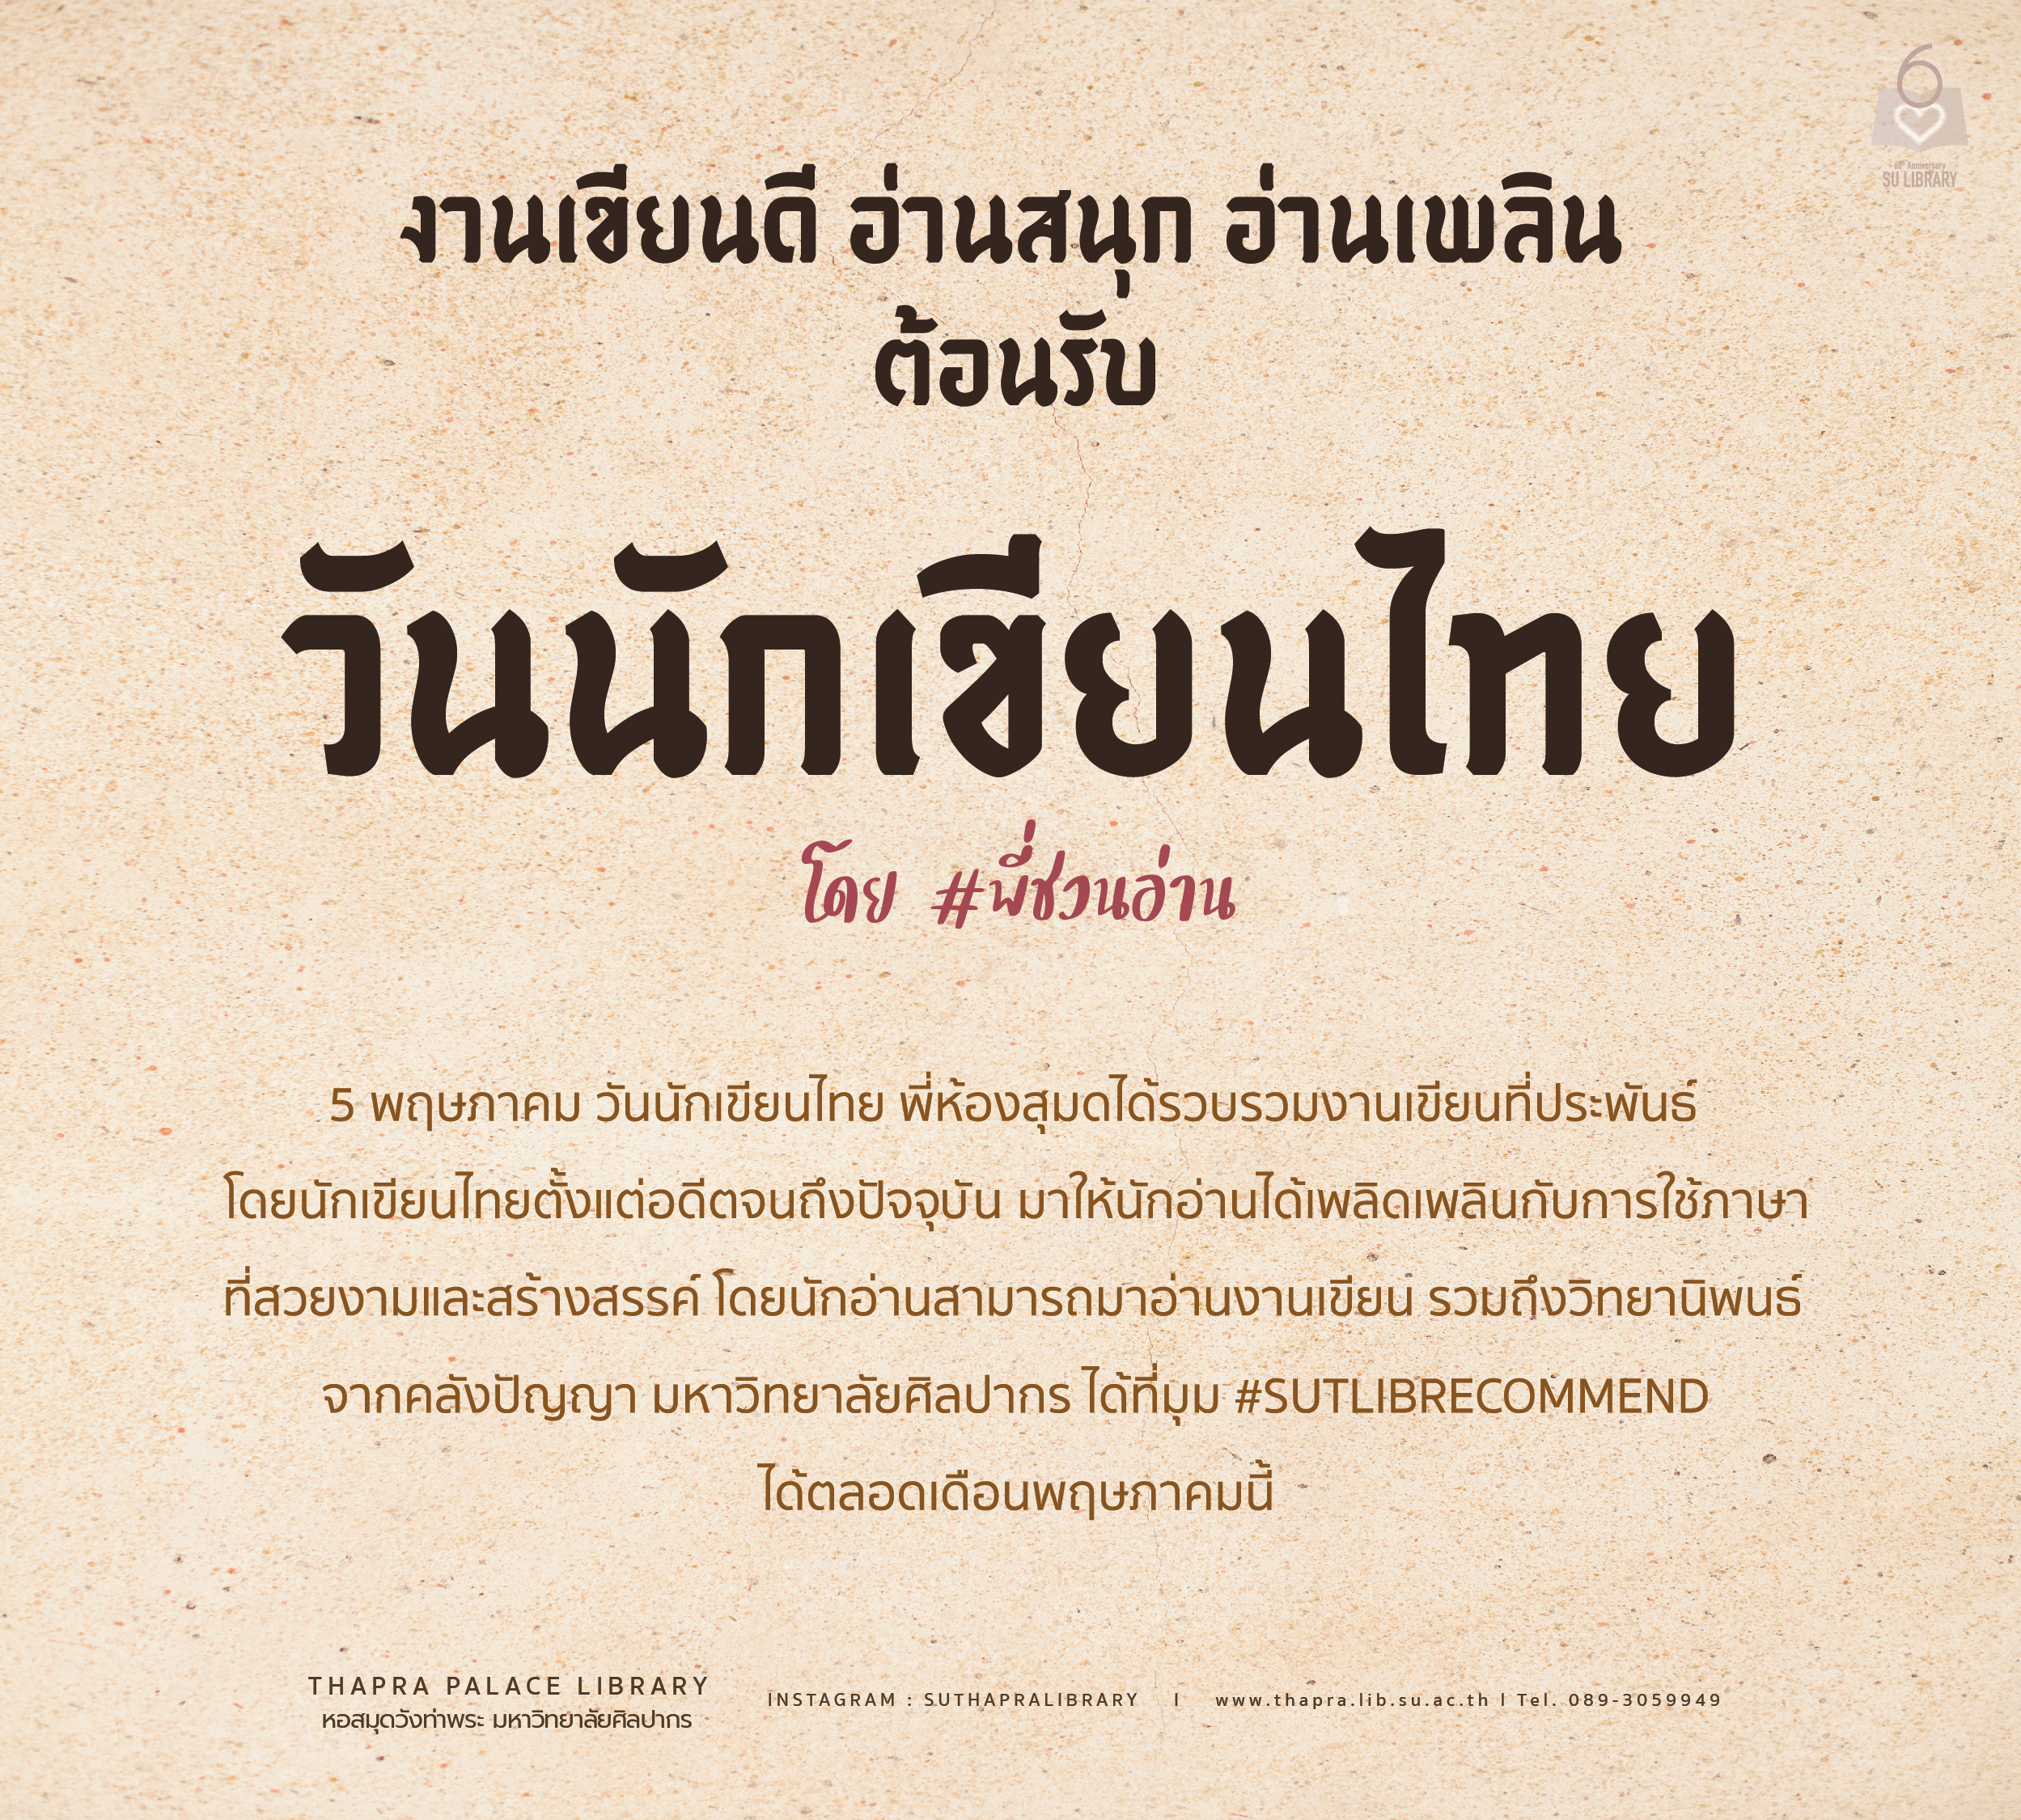 วรรณกรรมสำหรับวันนักเขียนไทยในมุม #SUTLIBRECOMMEND